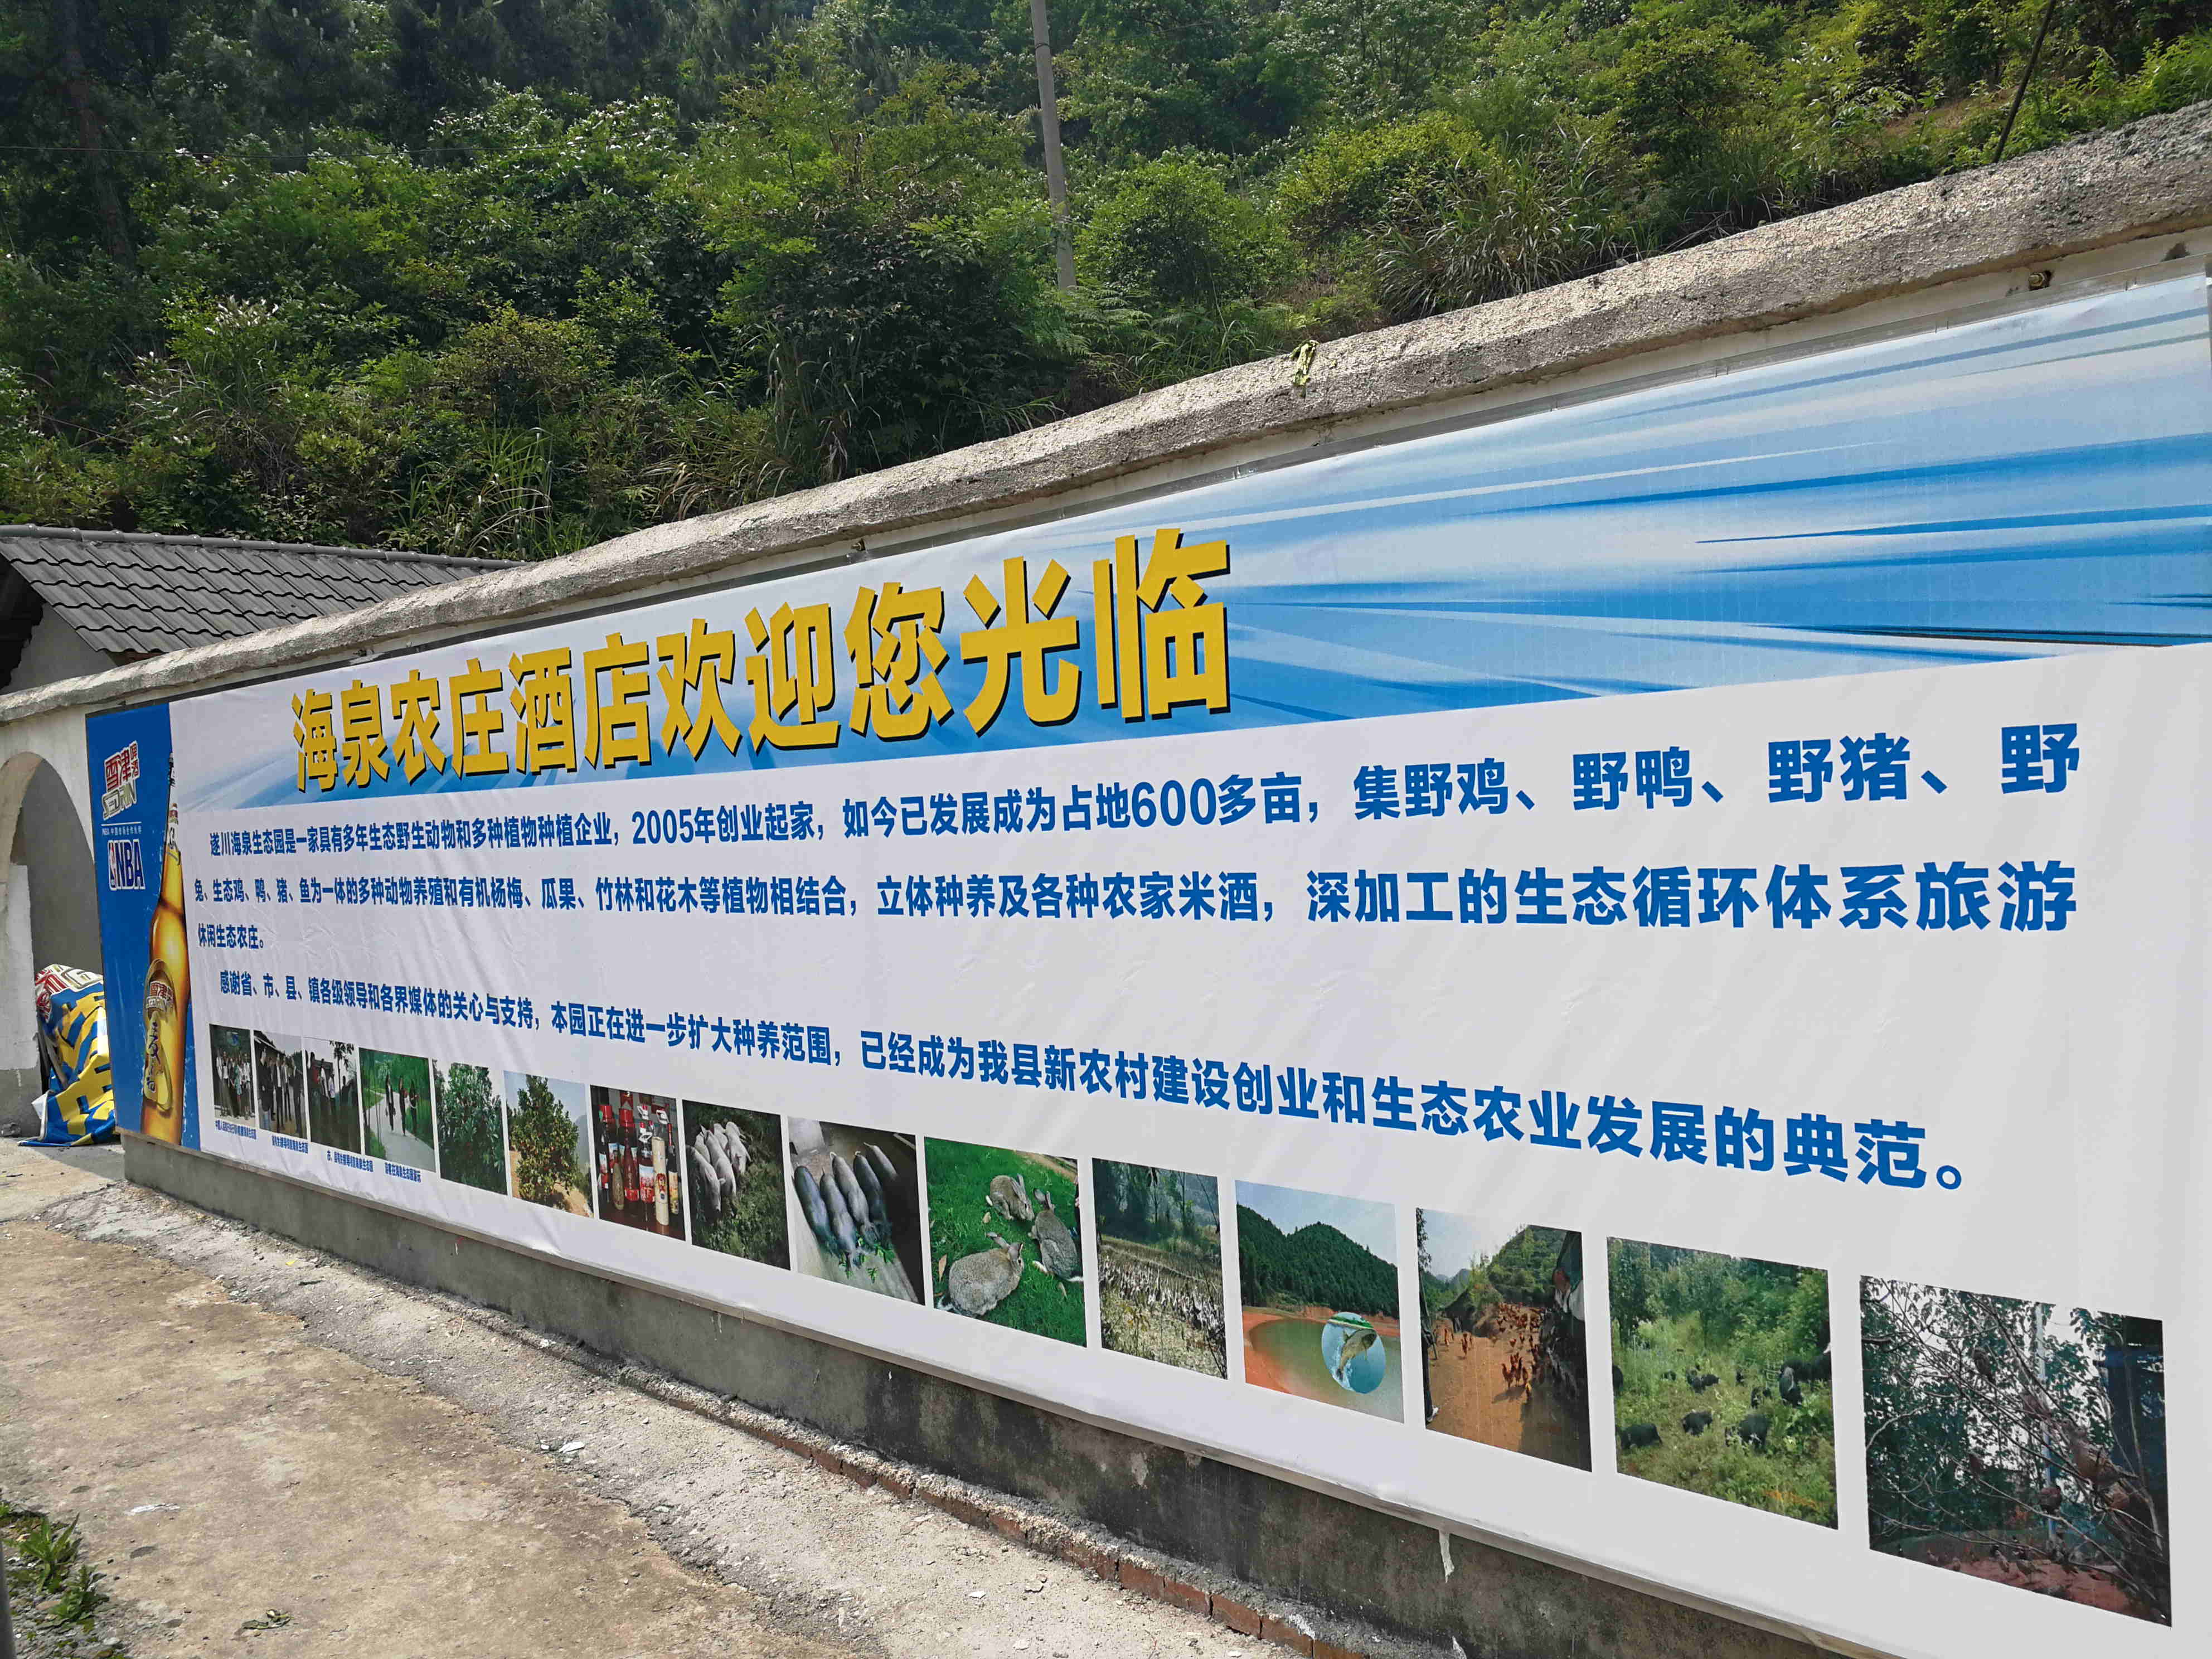 热烈庆祝江西海泉生态农业有限公司官网正式上线